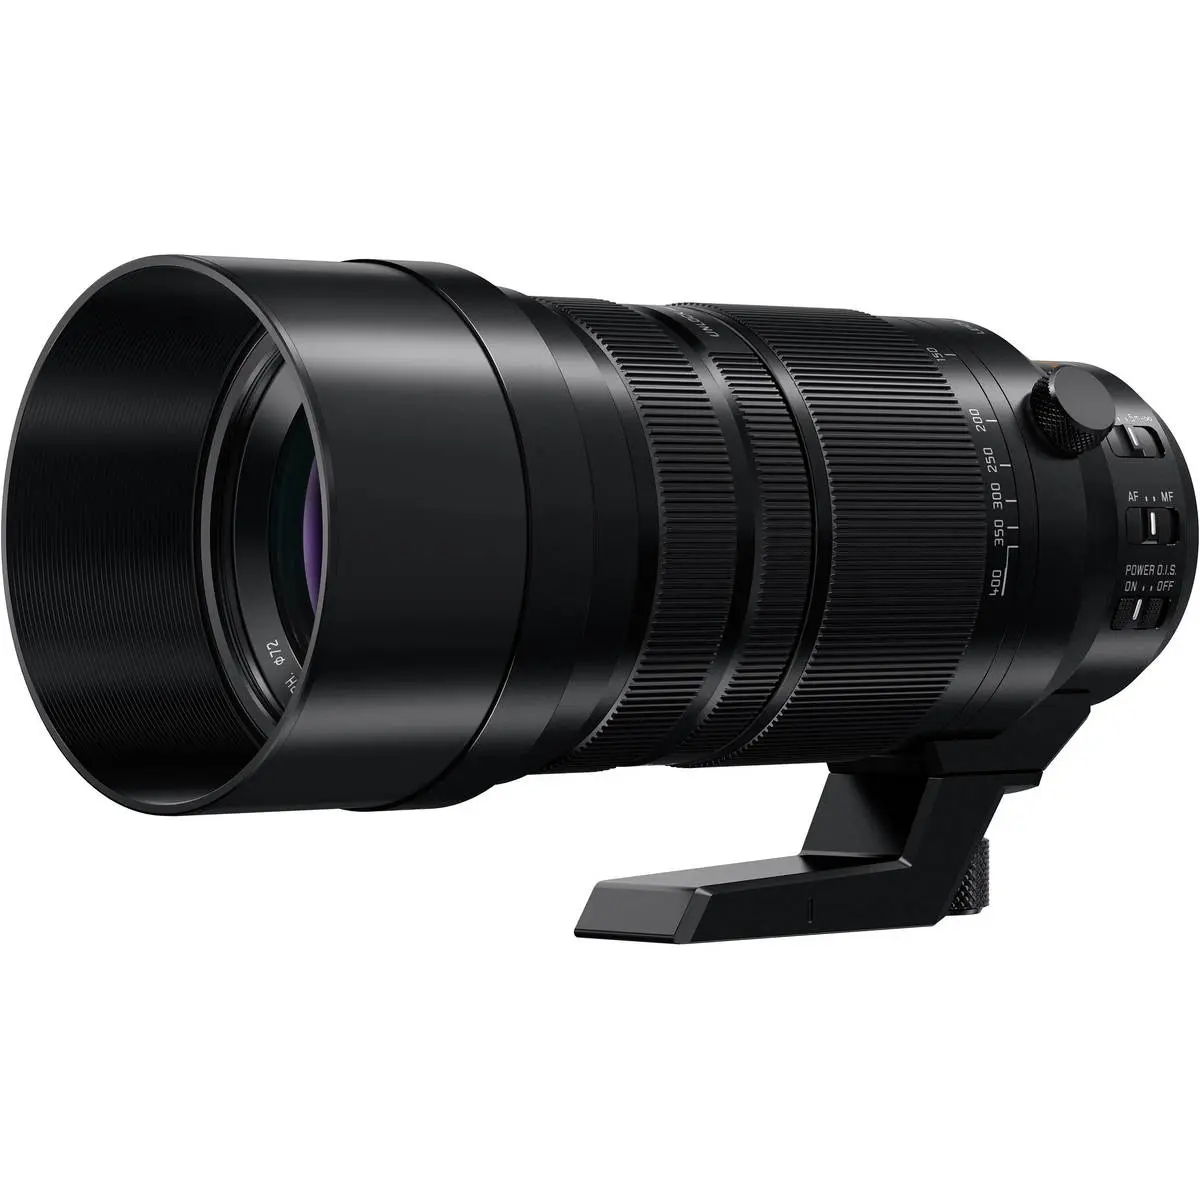 1. Panasonic DG V-Elmar 100-400mm F4.0-6.3 ASPH OIS Lens